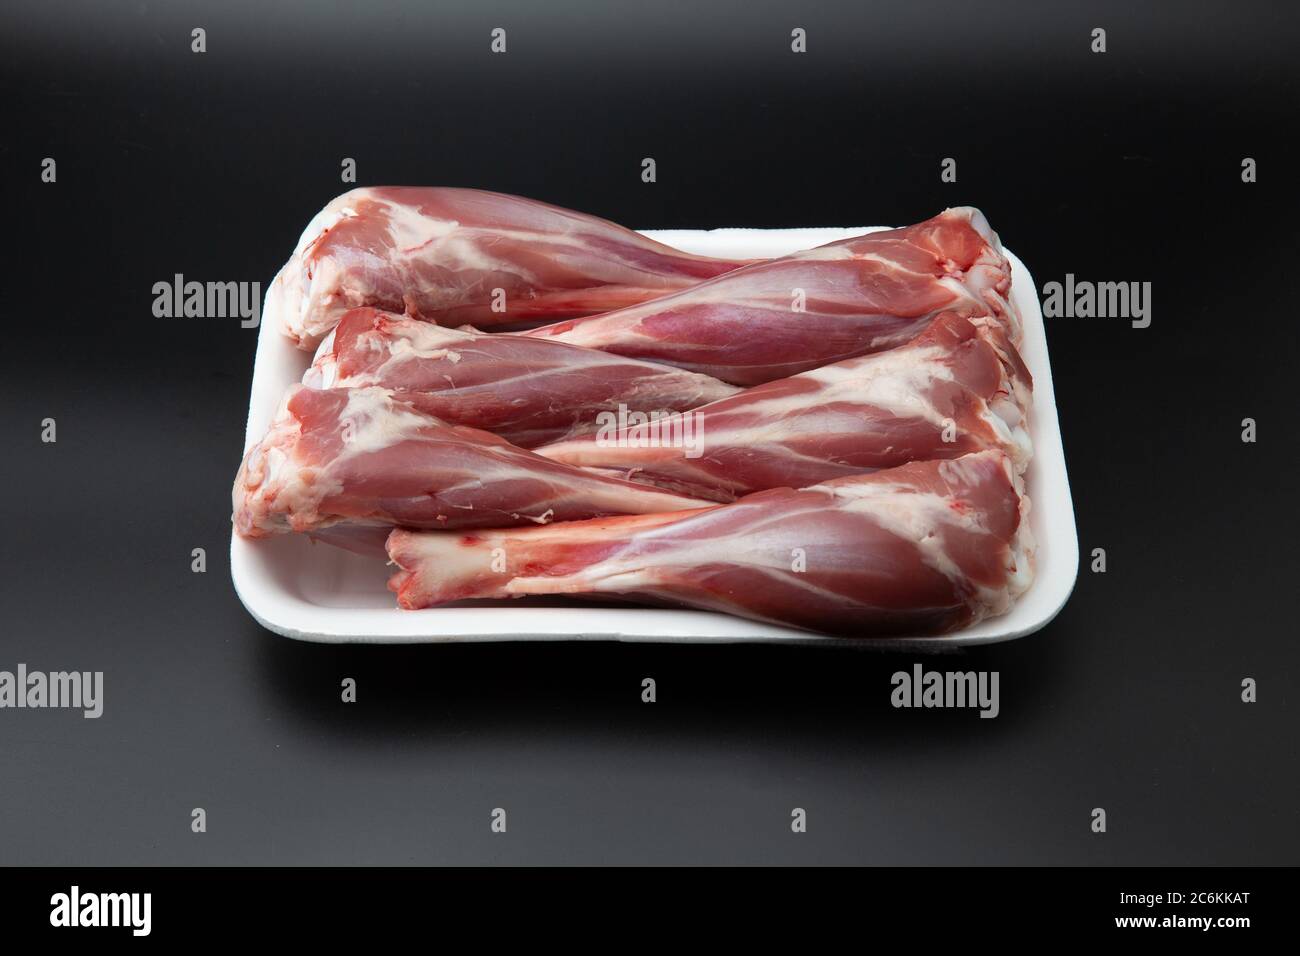 Grezzi agnello in un contenitore bianco di polistirolo isolato su sfondo nero con spazio per la copia del testo Foto Stock